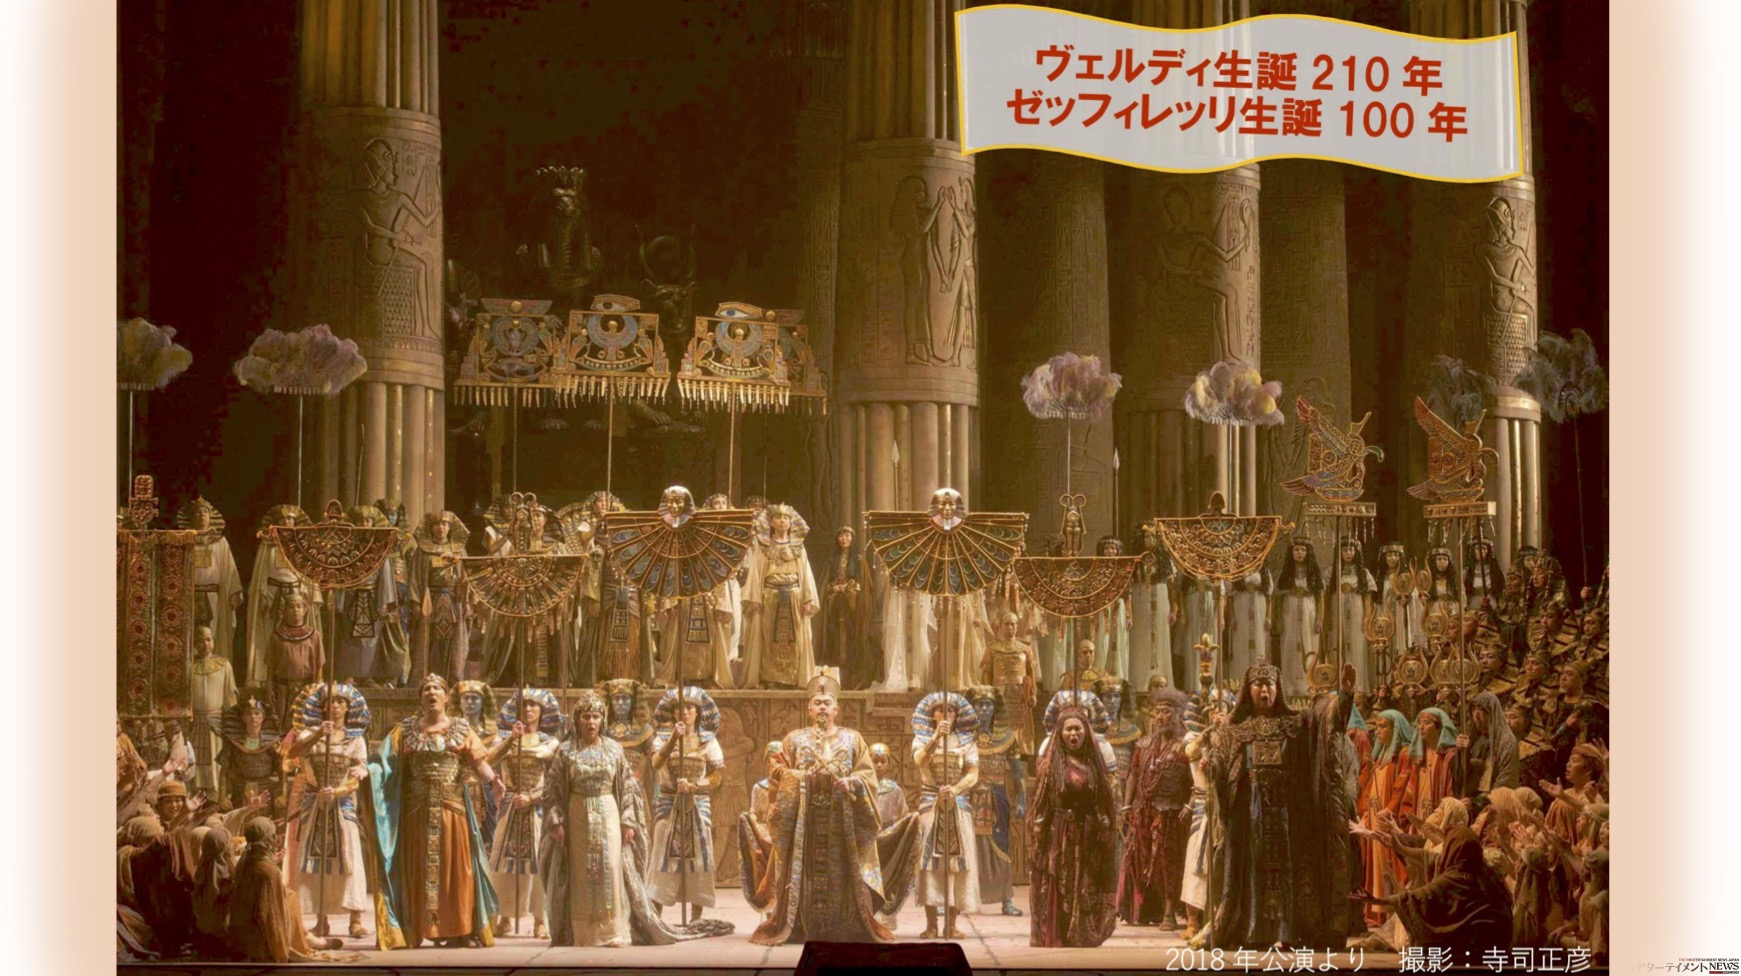 新国立劇場 開場25周年記念公演 『アイーダ』 | シアターテイメント 